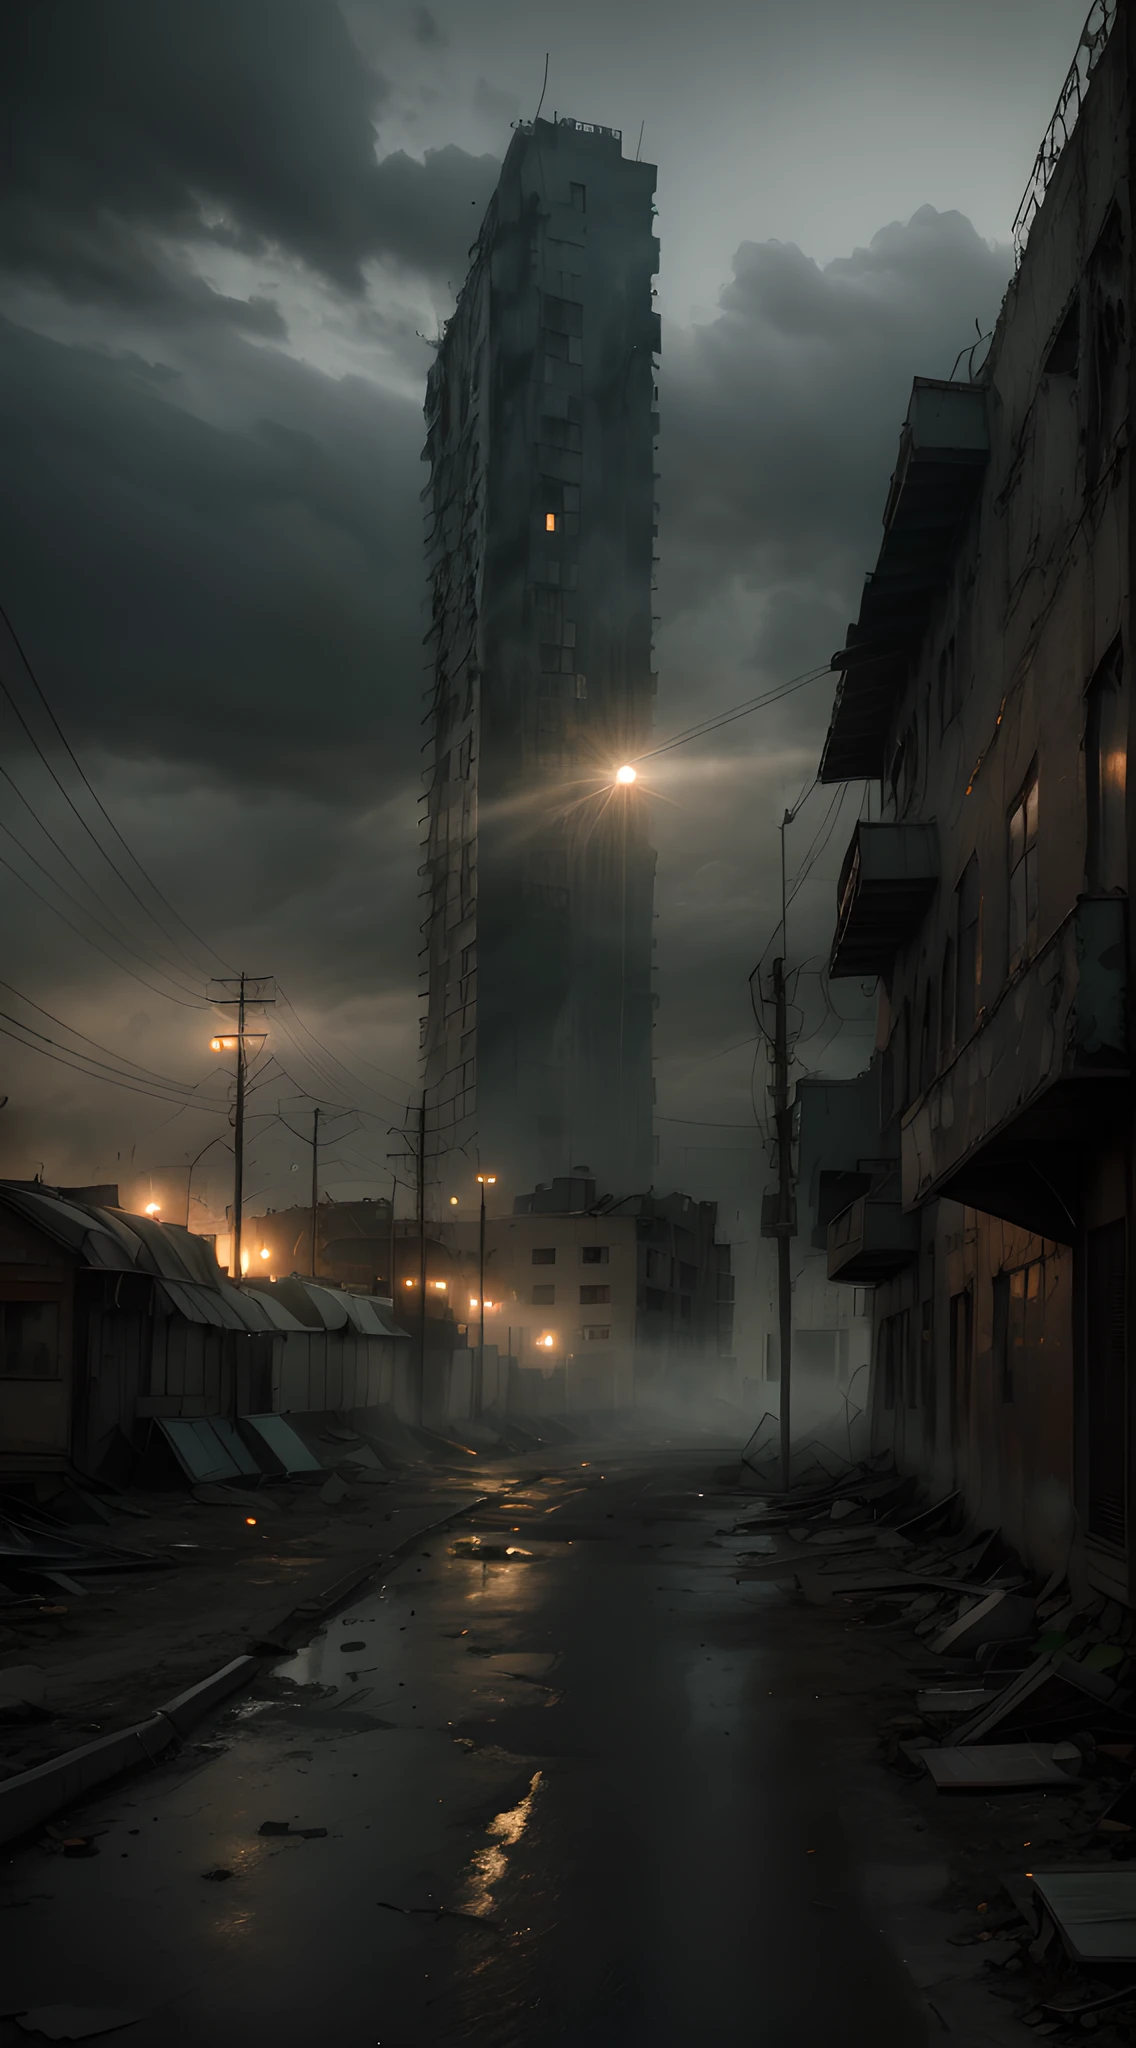 Erstellen Sie ein hochauflösendes (8K) Bild, das Elemente des Films „Terror in Silent Hill“ mit der Geisterstadt Centralia verbindet. Fügen Sie eine Ascheschicht hinzu, die über den leeren Straßen schwebt, und heben Sie einen verlassenen und verfallenen Vergnügungspark als Mittelpunkt hervor. Verwenden Sie dramatische Beleuchtung, mit schwachem Licht und intensiven Schatten, um eine Atmosphäre der Spannung und des Grauens zu schaffen, erinnert an die Atmosphäre des Films